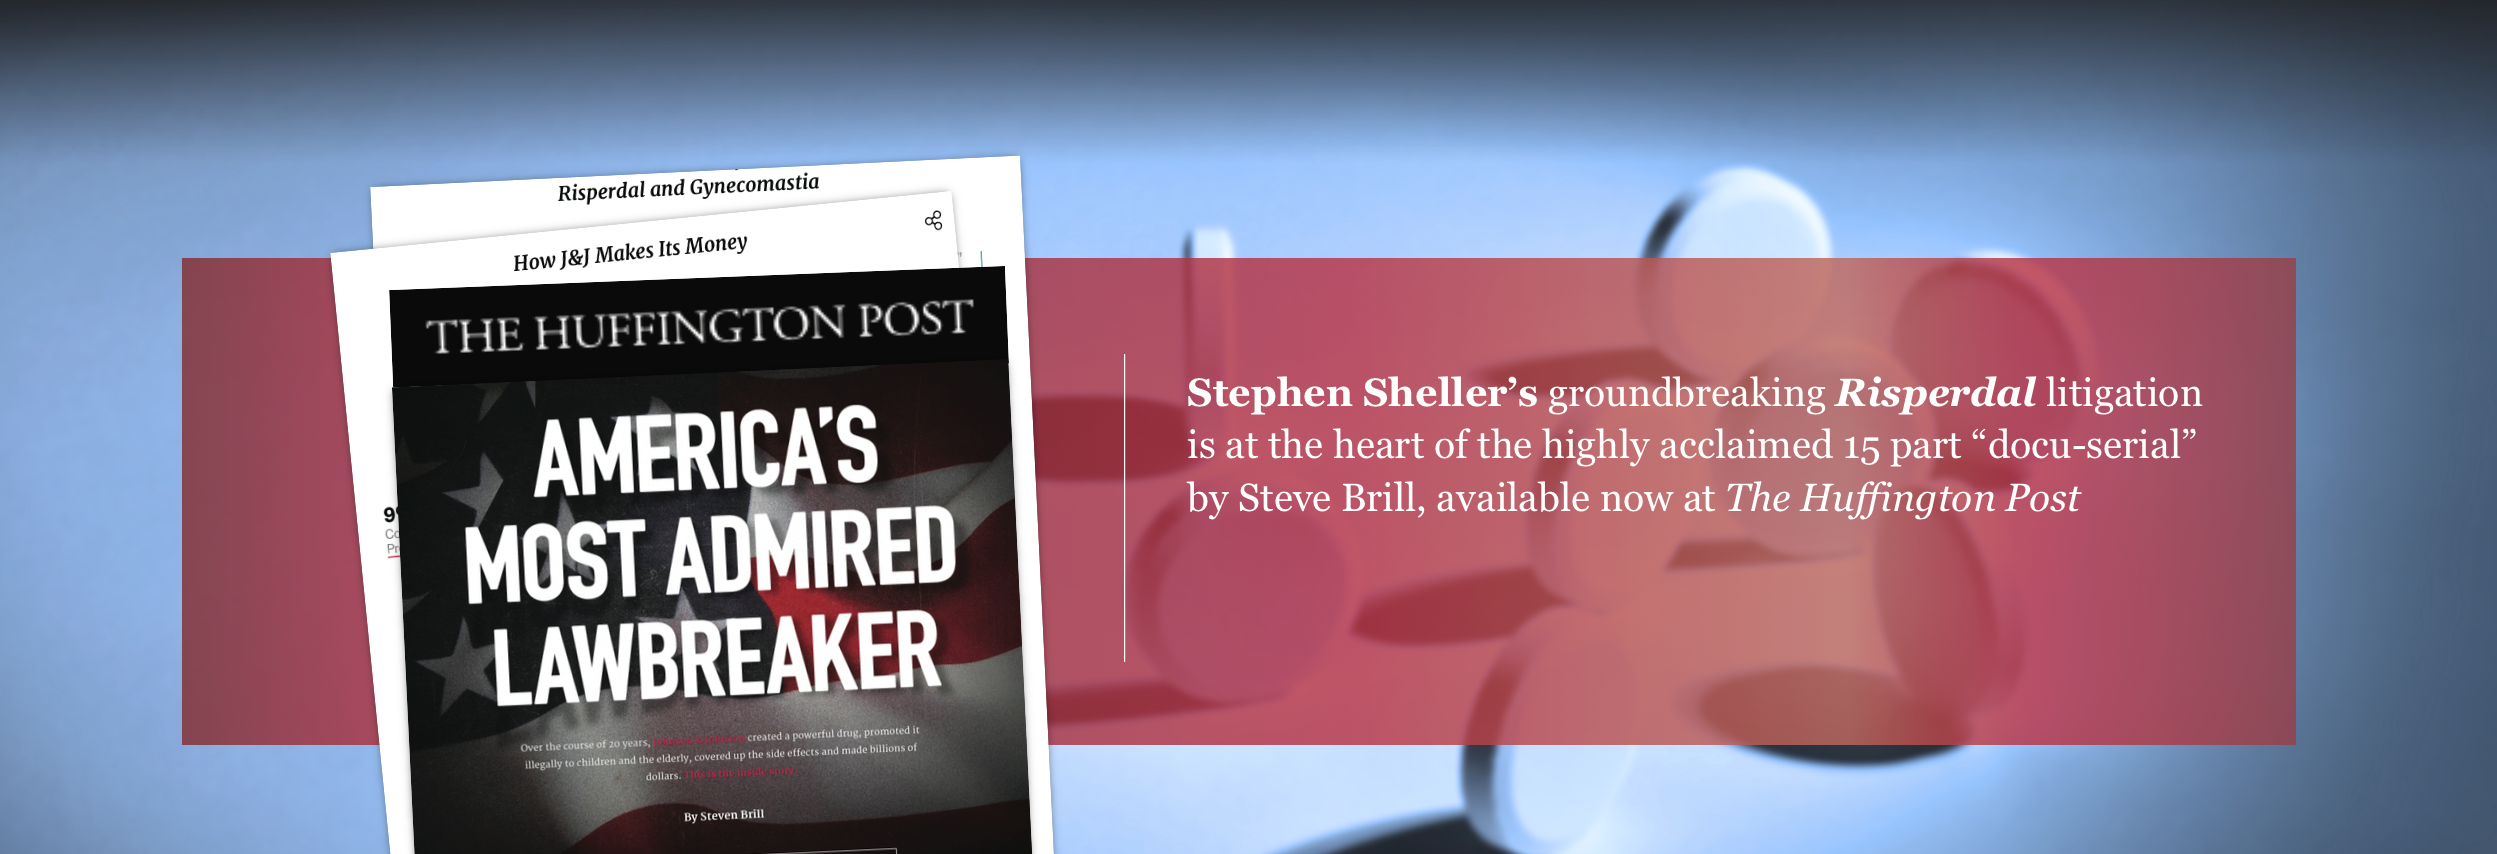 Risperdal Huffington Post Steven Brill Stephen Sheller